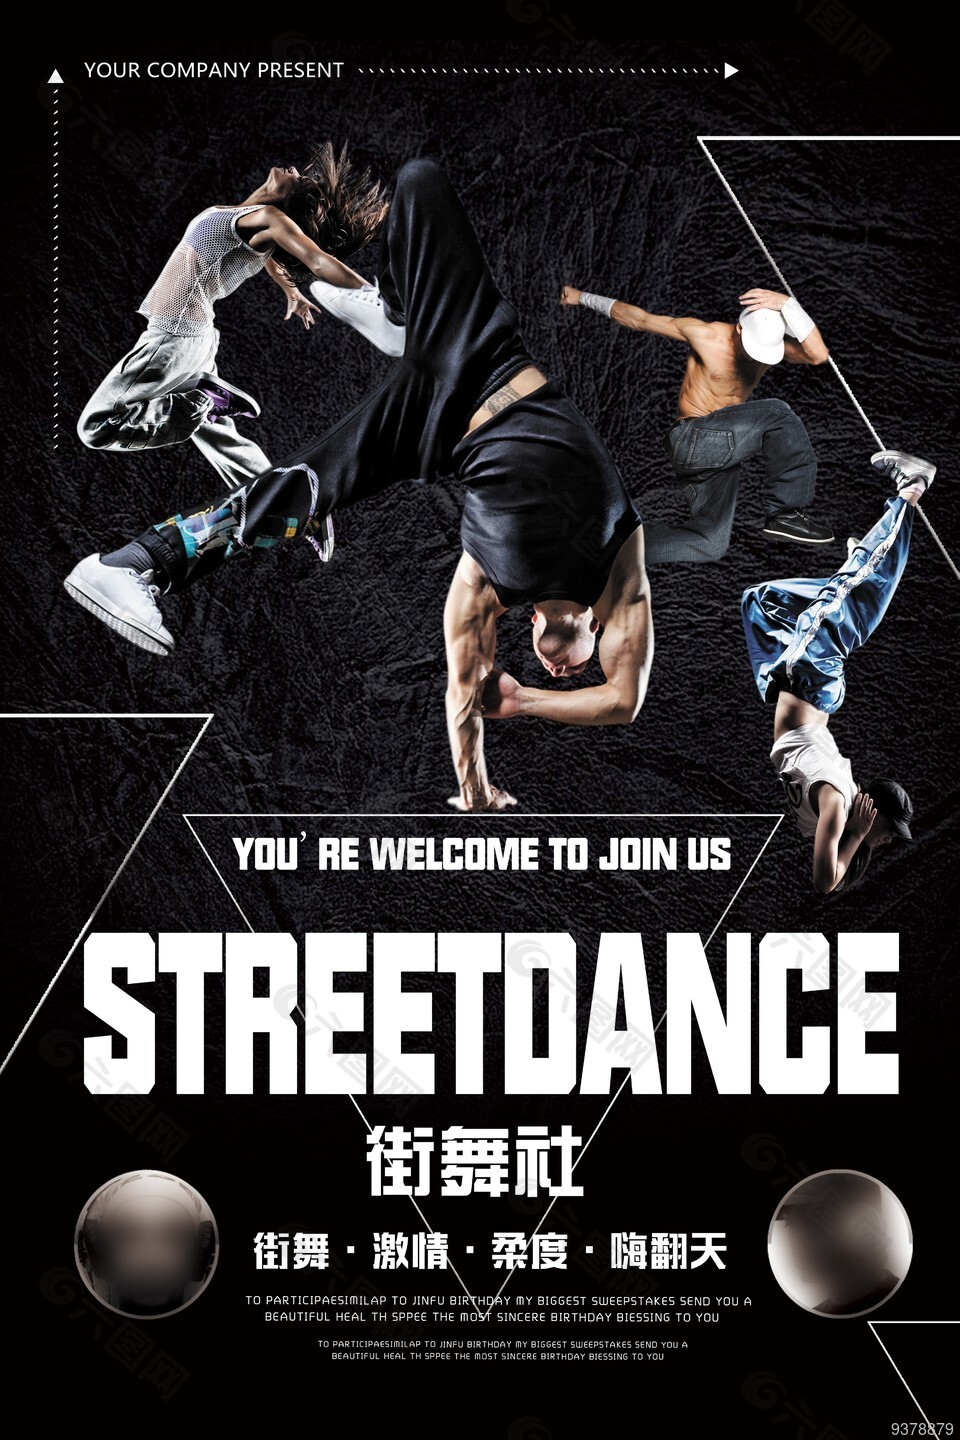 街舞社社团招新海报黑色背景图片